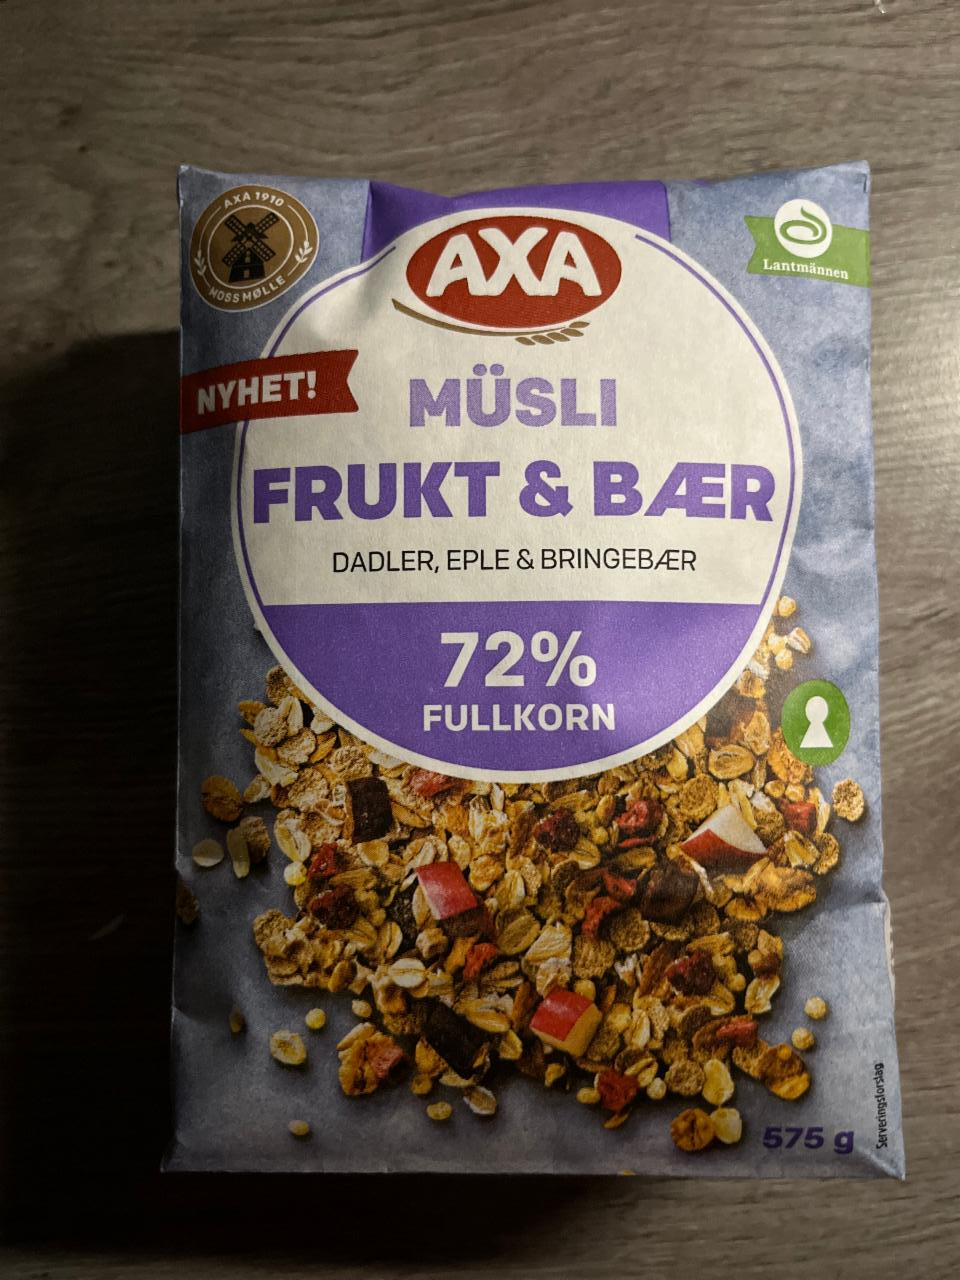 Фото - Мюсли фрукты и ягоды müsli frukt&bær Axa